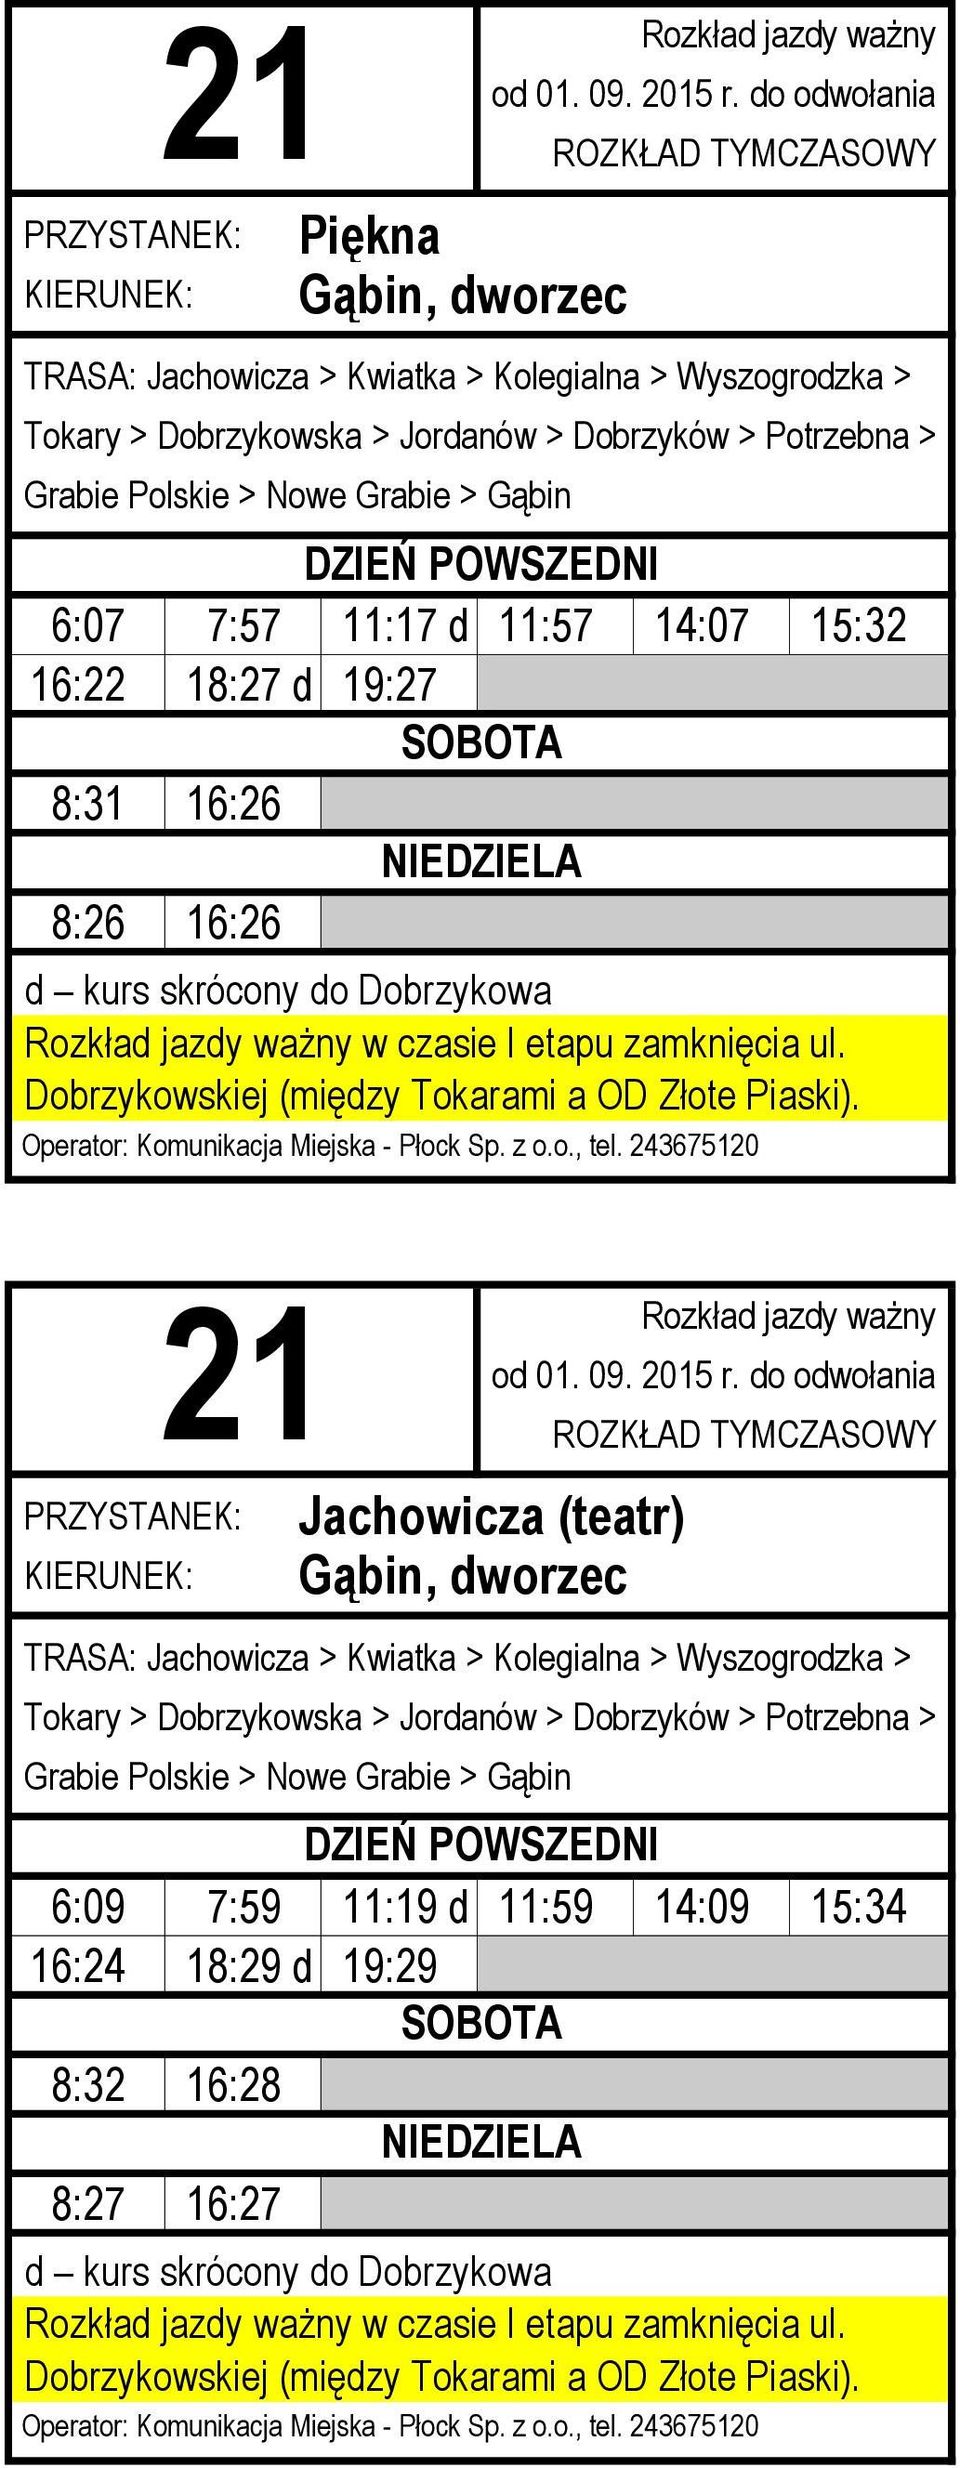 Jachowicza (teatr) TRASA: Jachowicza > Kwiatka > Kolegialna > Wyszogrodzka > Tokary > Dobrzykowska > Jordanów > Dobrzyków